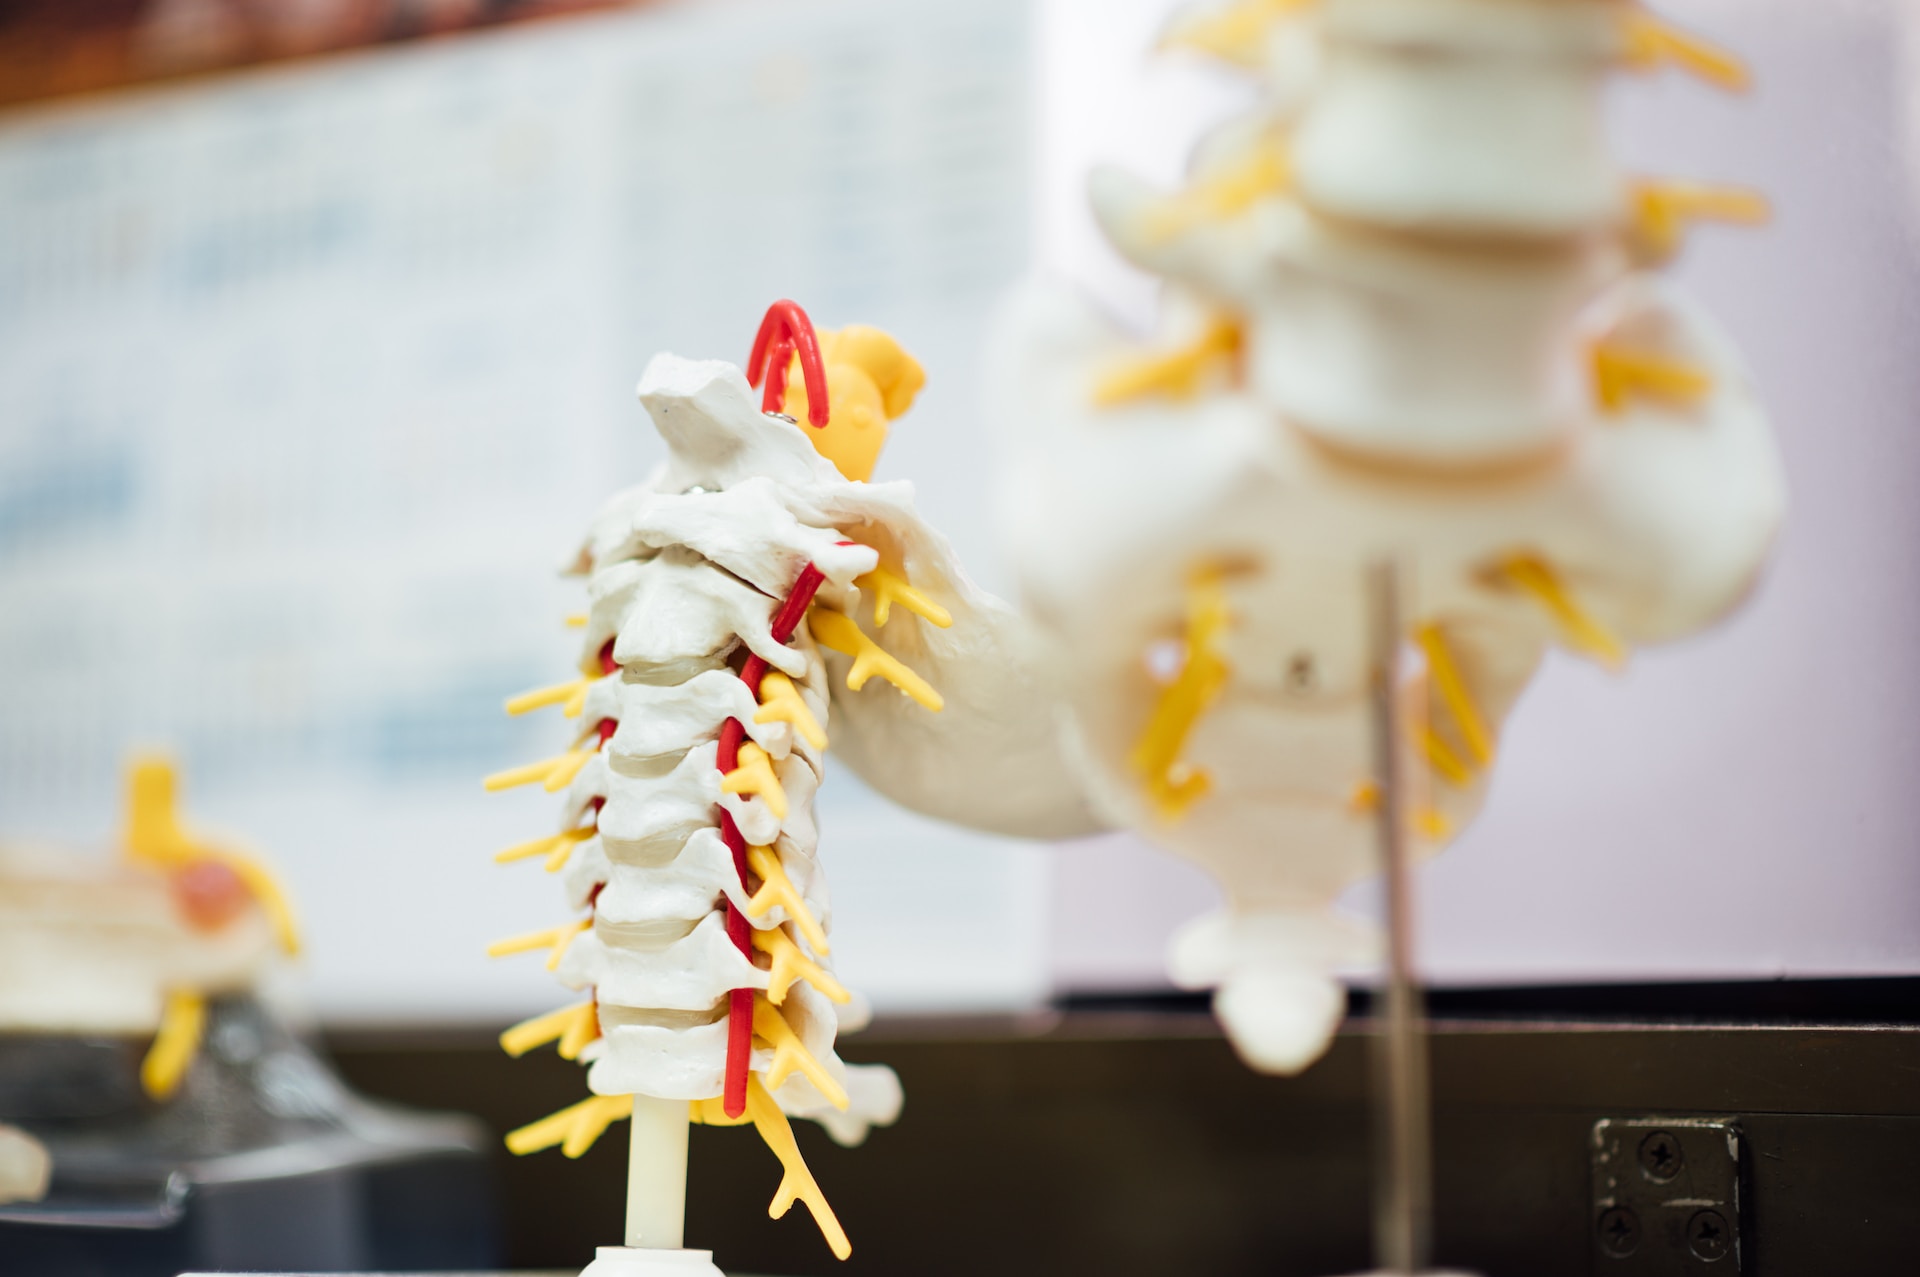 3d model of spine